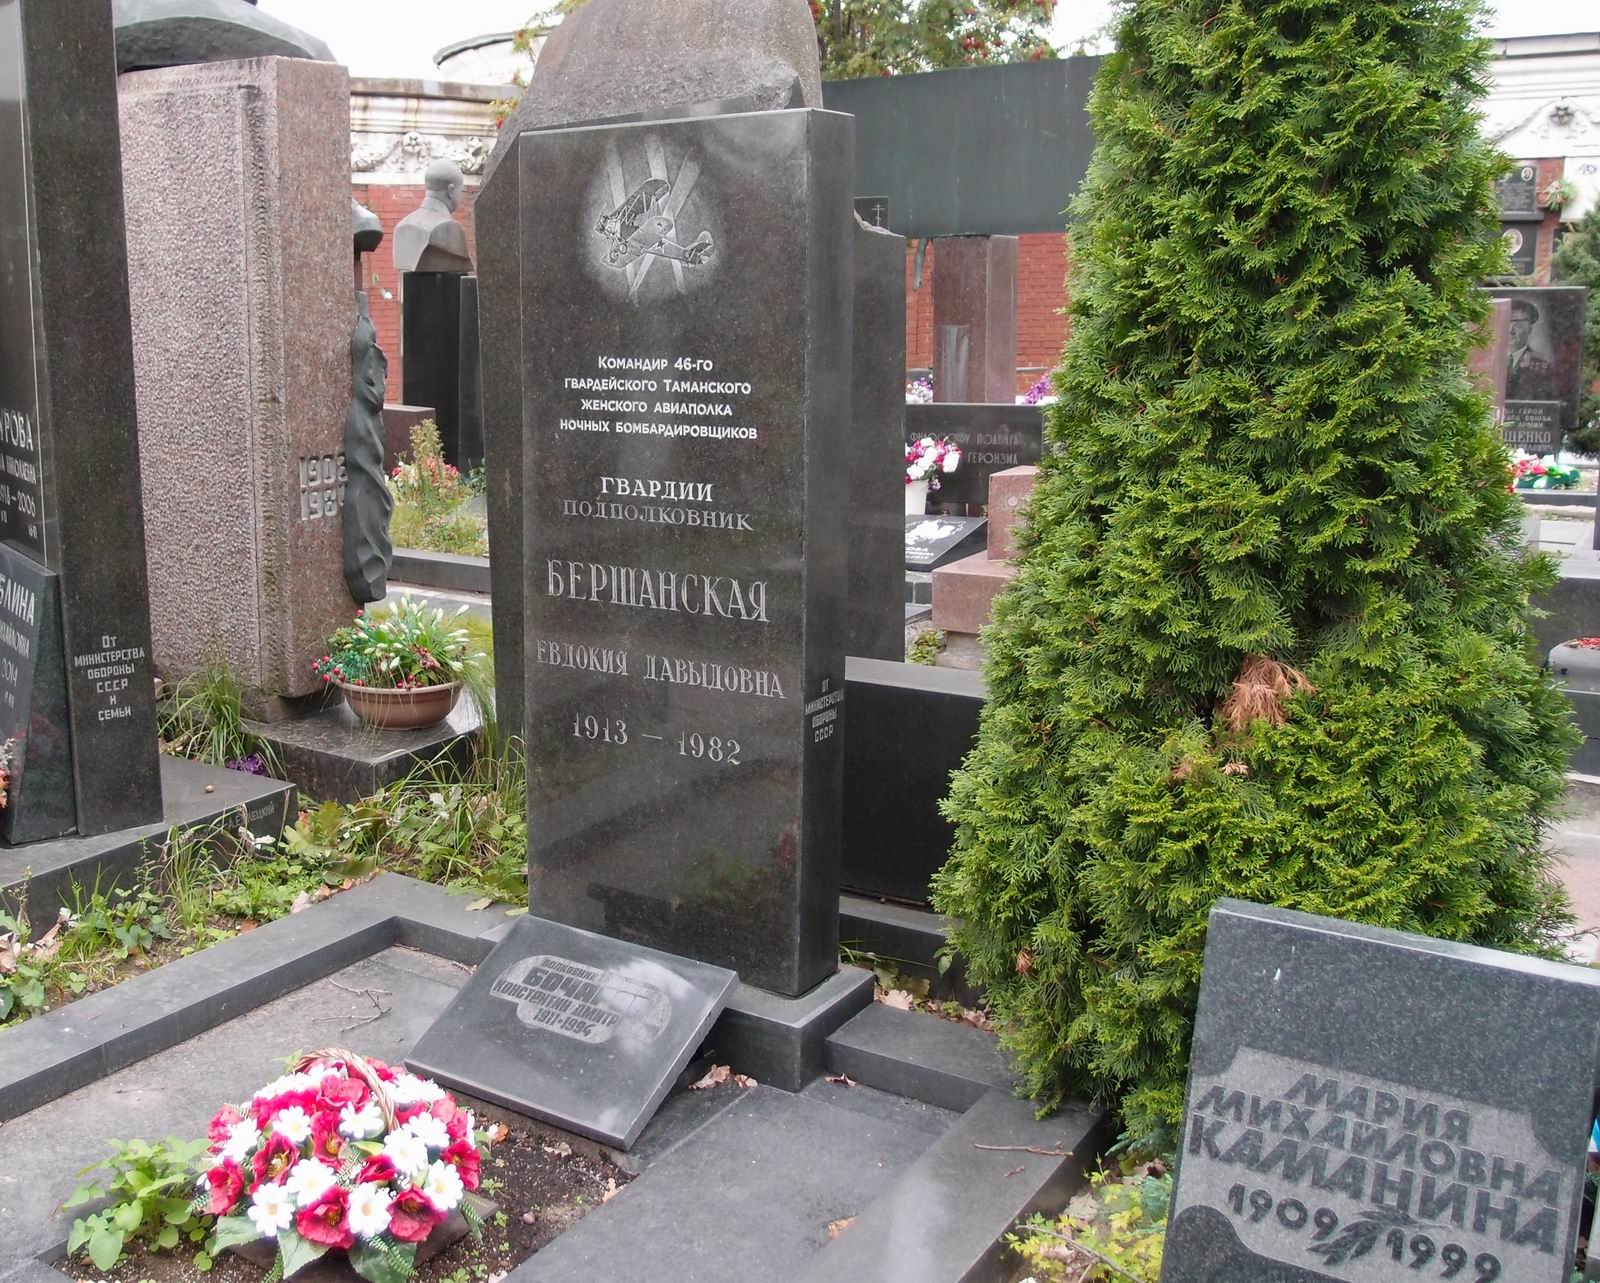 Памятник на могиле Бершанской (Бочаровой) Е.Д. (1913–1982), на Новодевичьем кладбище (7–19–13).